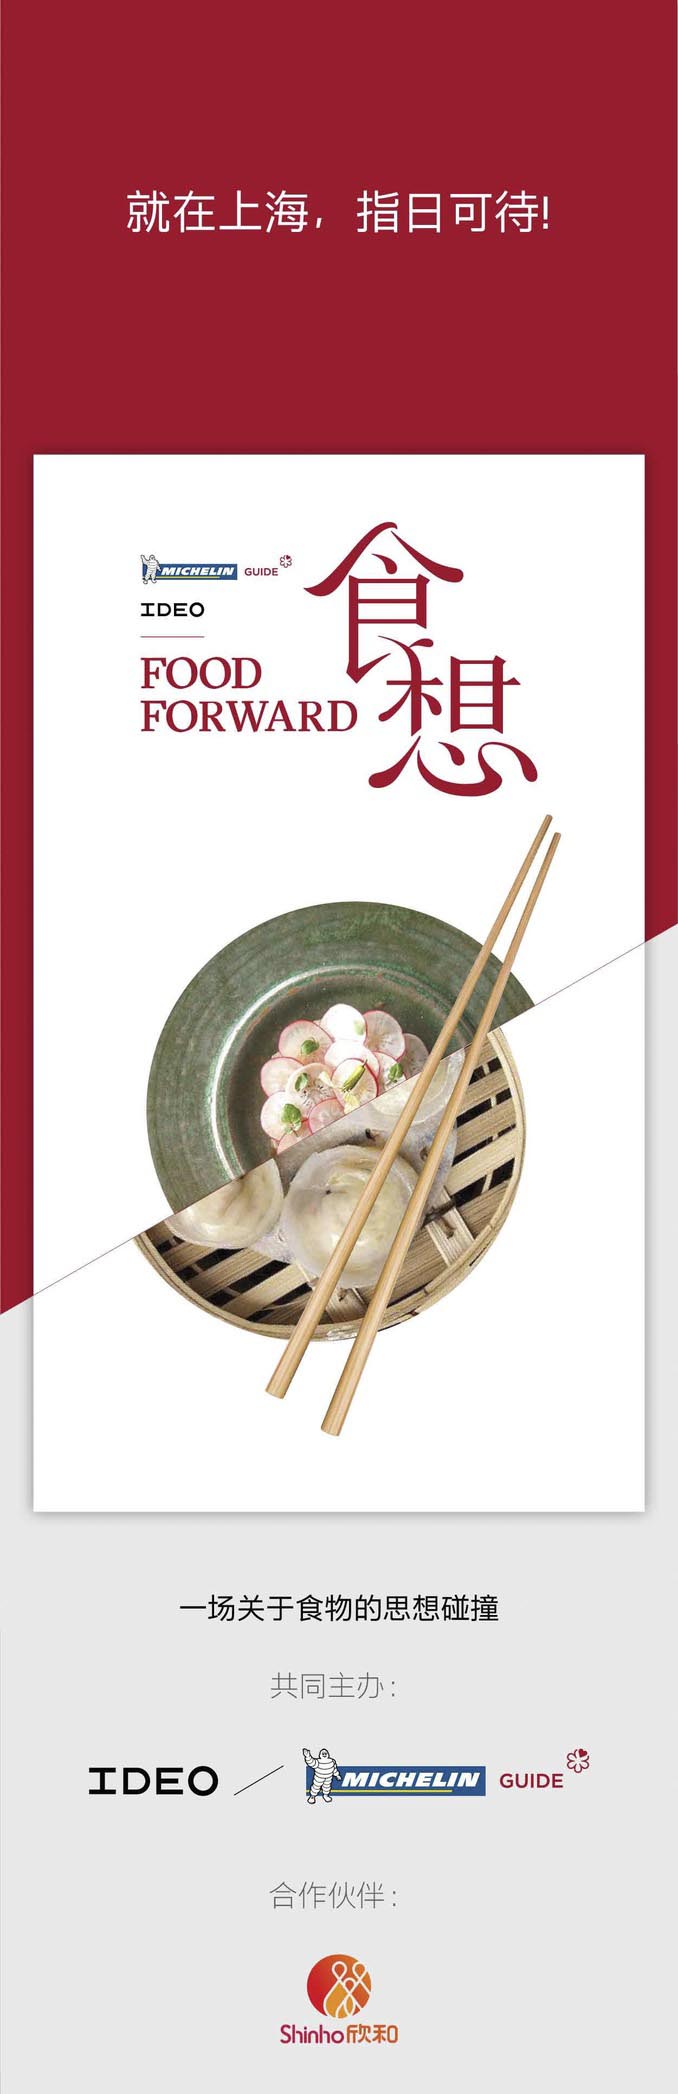 Food Forward 食想峰会